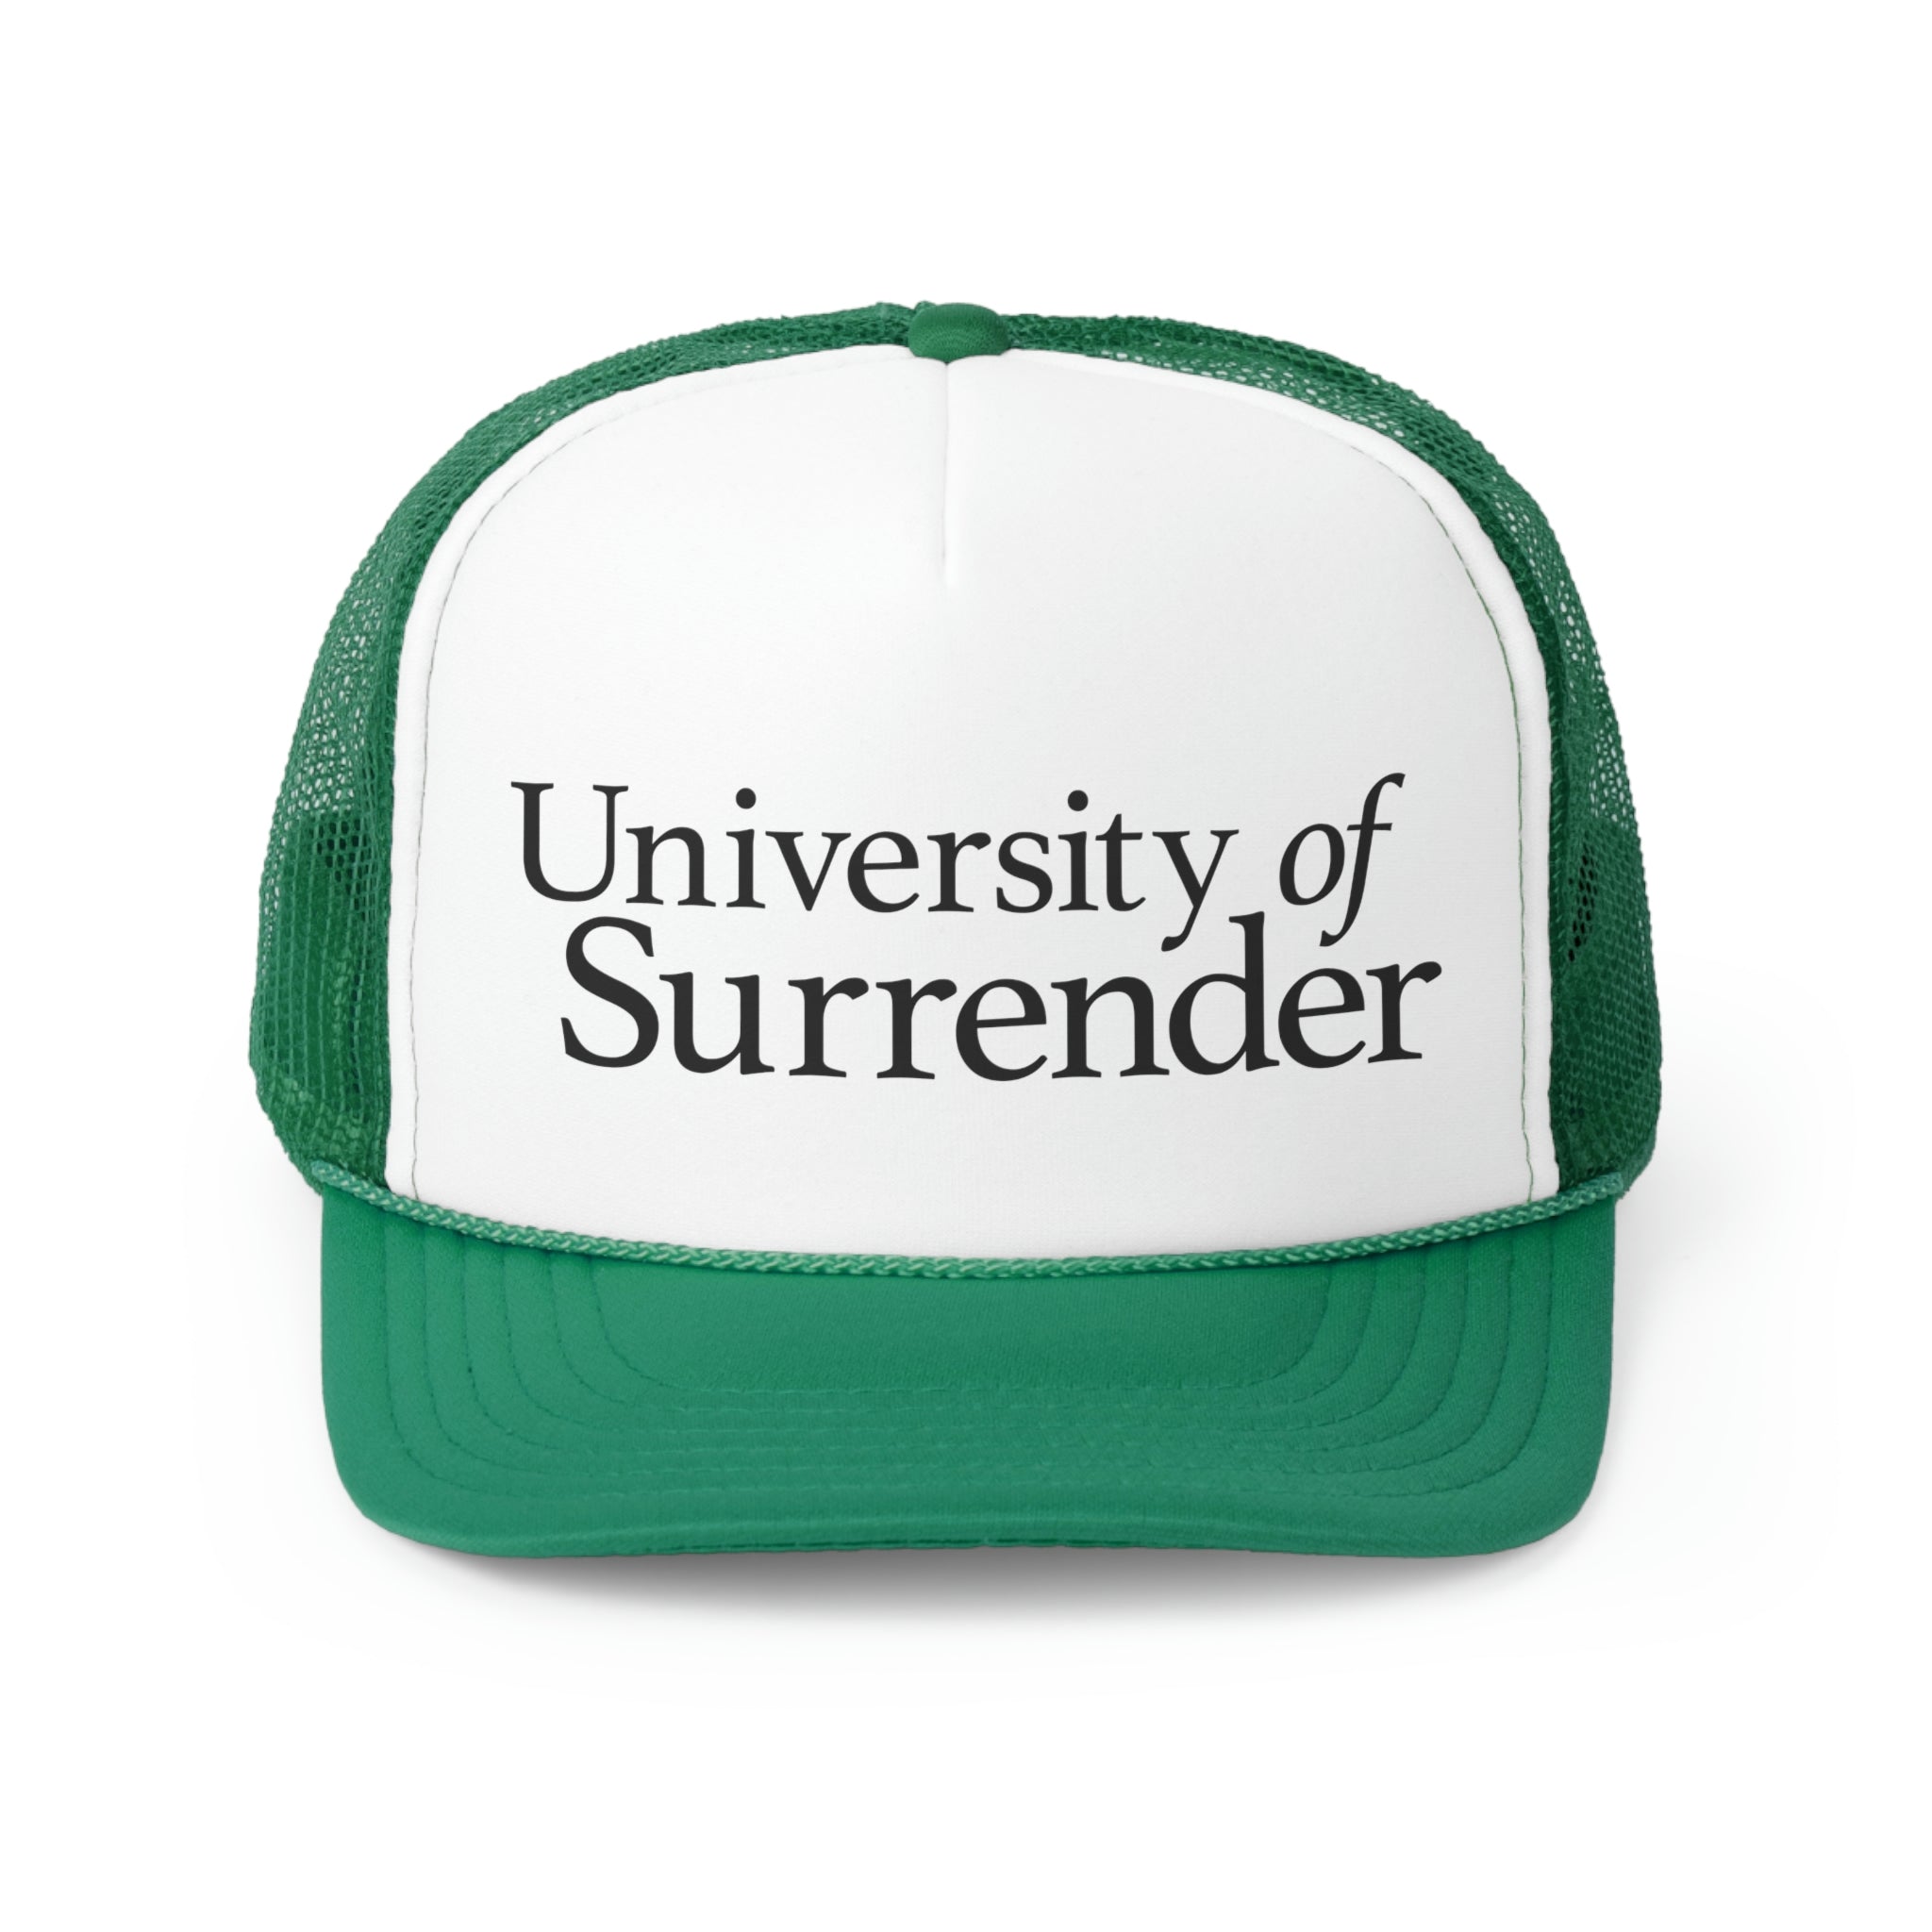 University of Surrender Trucker Cap